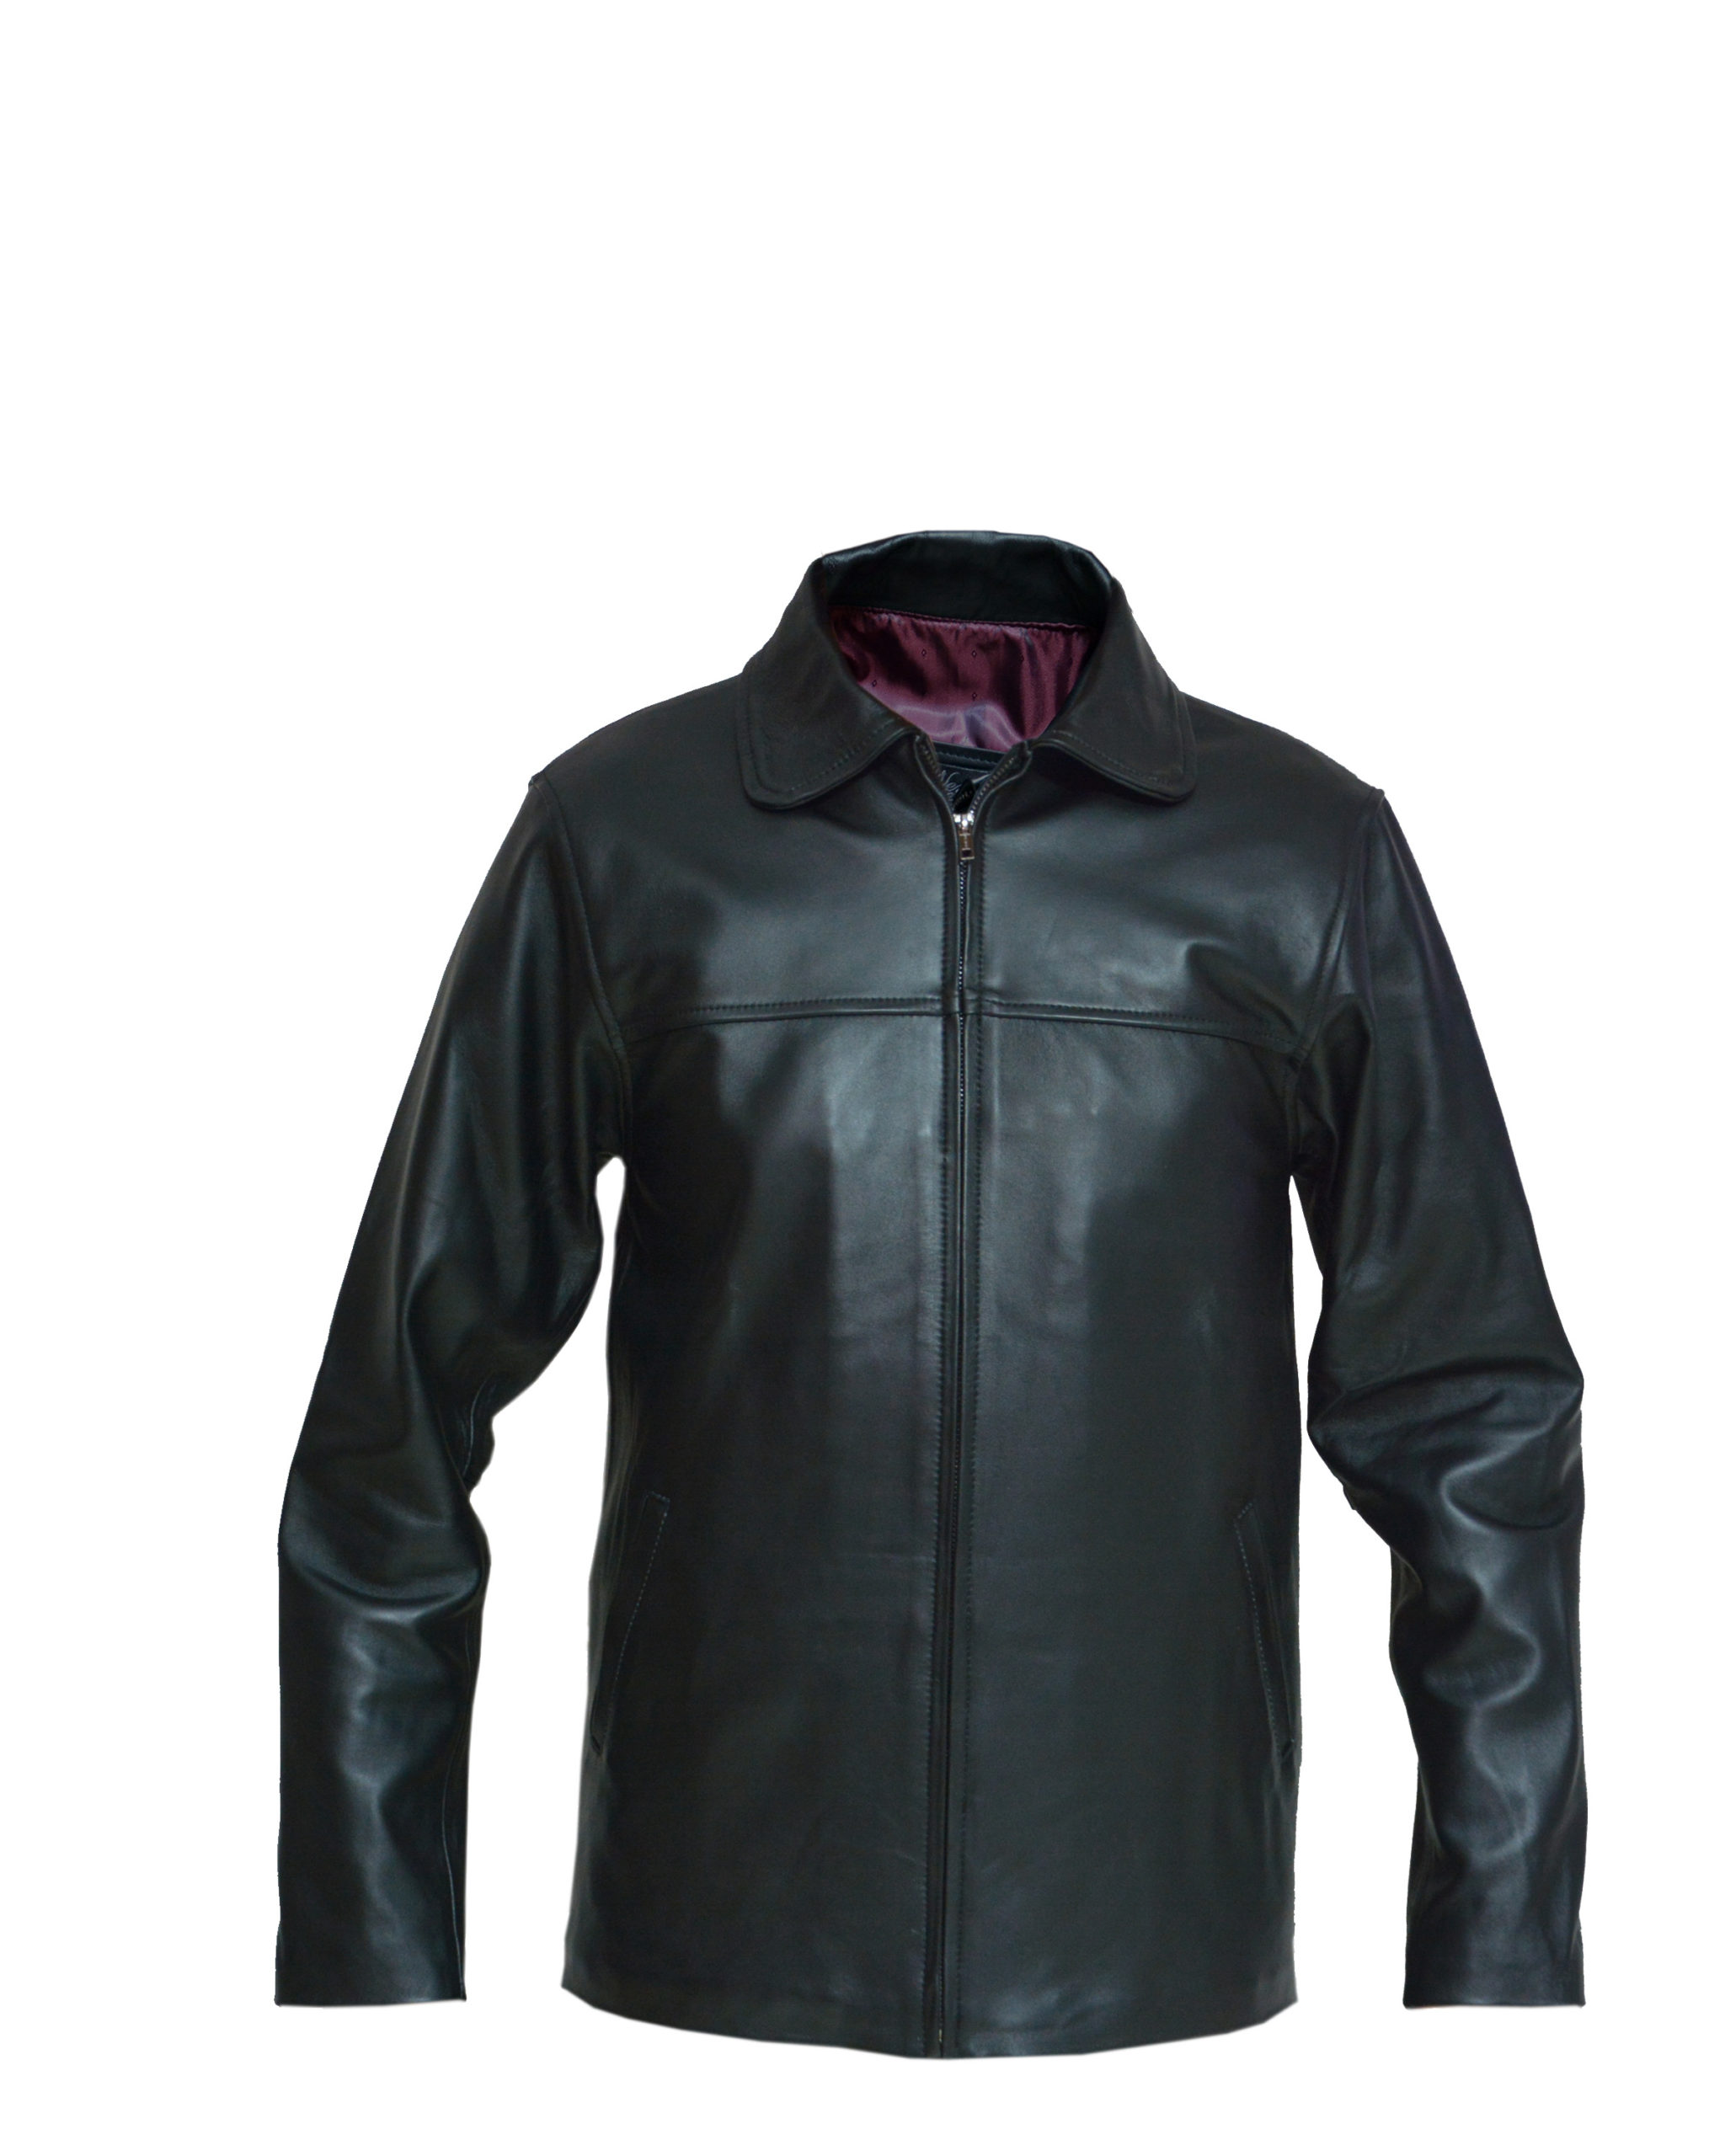 Chamarra Piel Hombre mod.CIN – Chamarras Piel Leather outfit